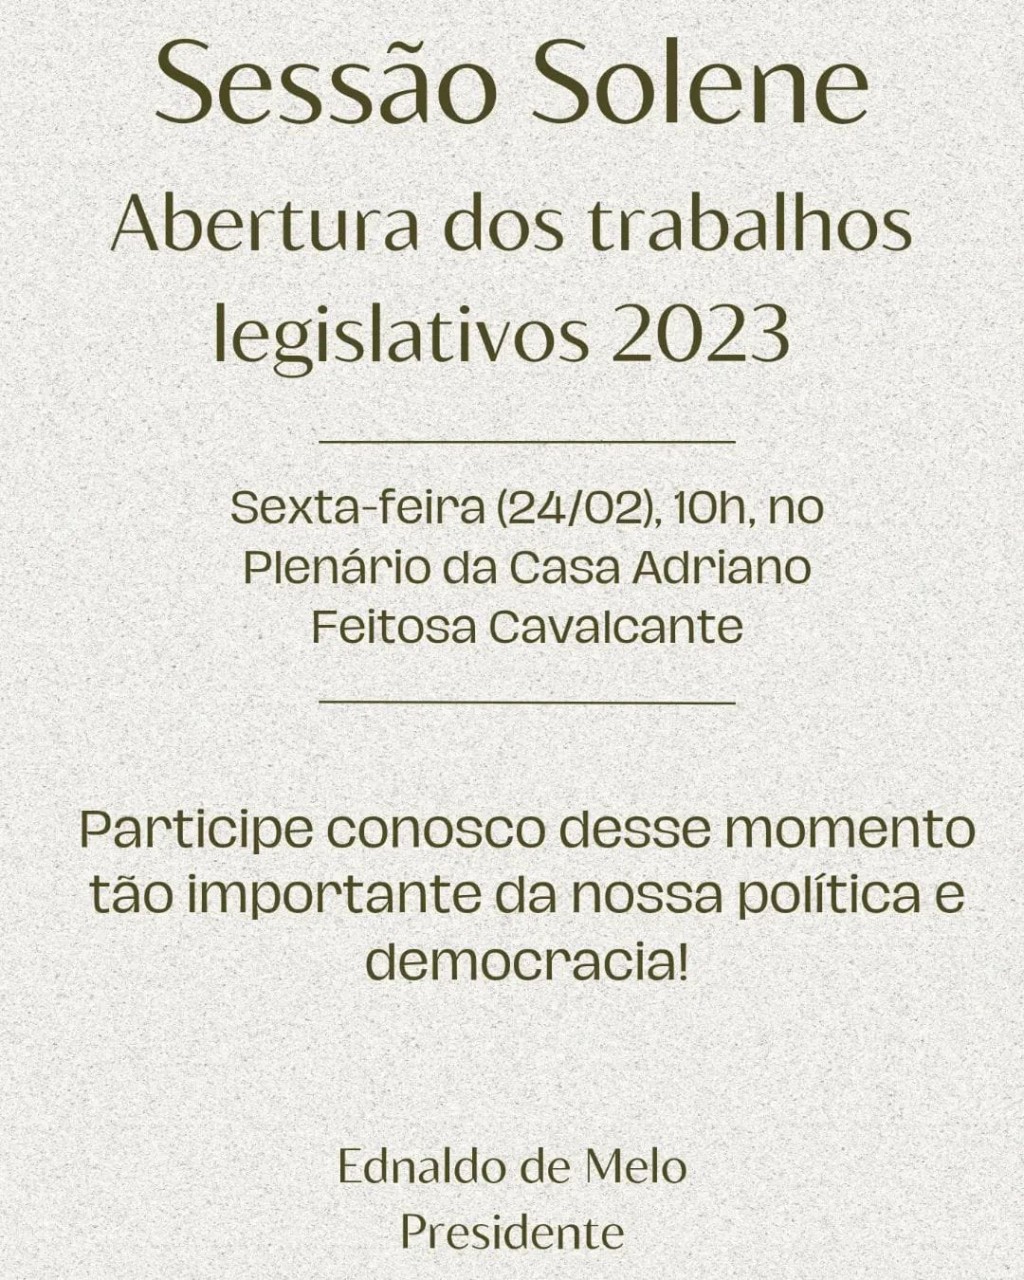 CONVITE PARA SESSÃO DE ABERTURA DOS TRABALHOS LEGISLATIVOS 2023